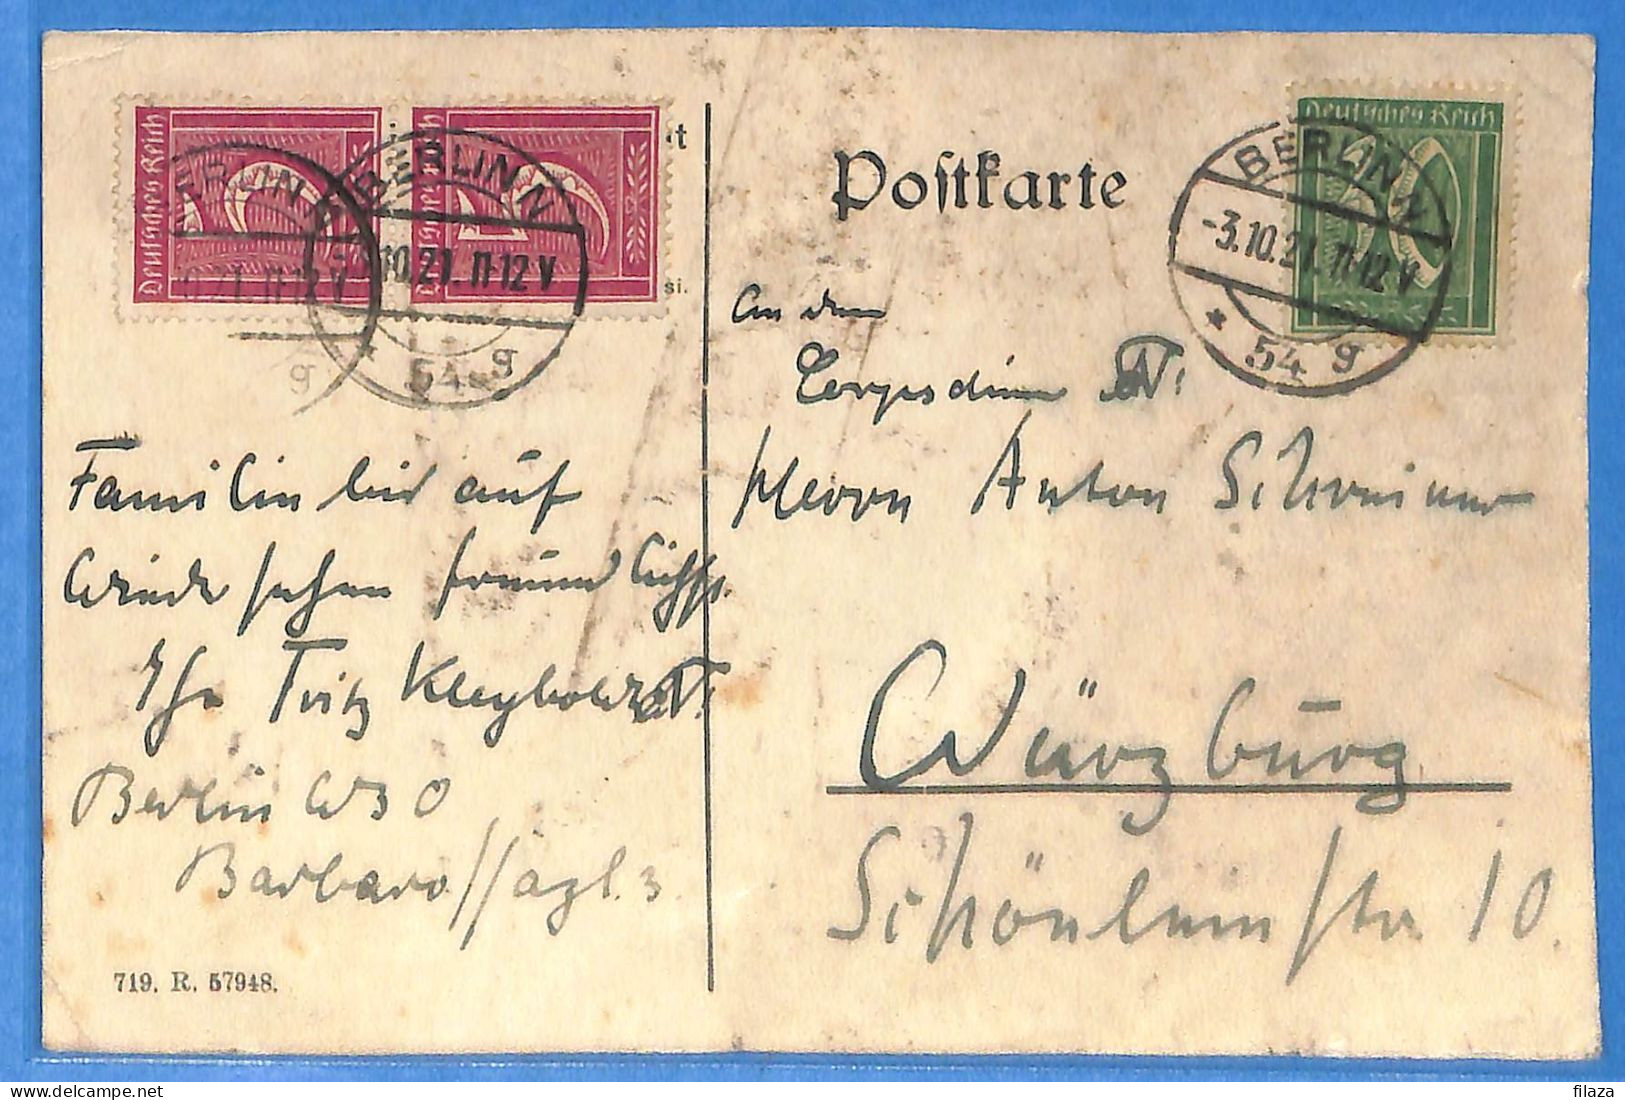 Allemagne Reich 1921 - Carte Postale De Berlin - G33368 - Lettres & Documents